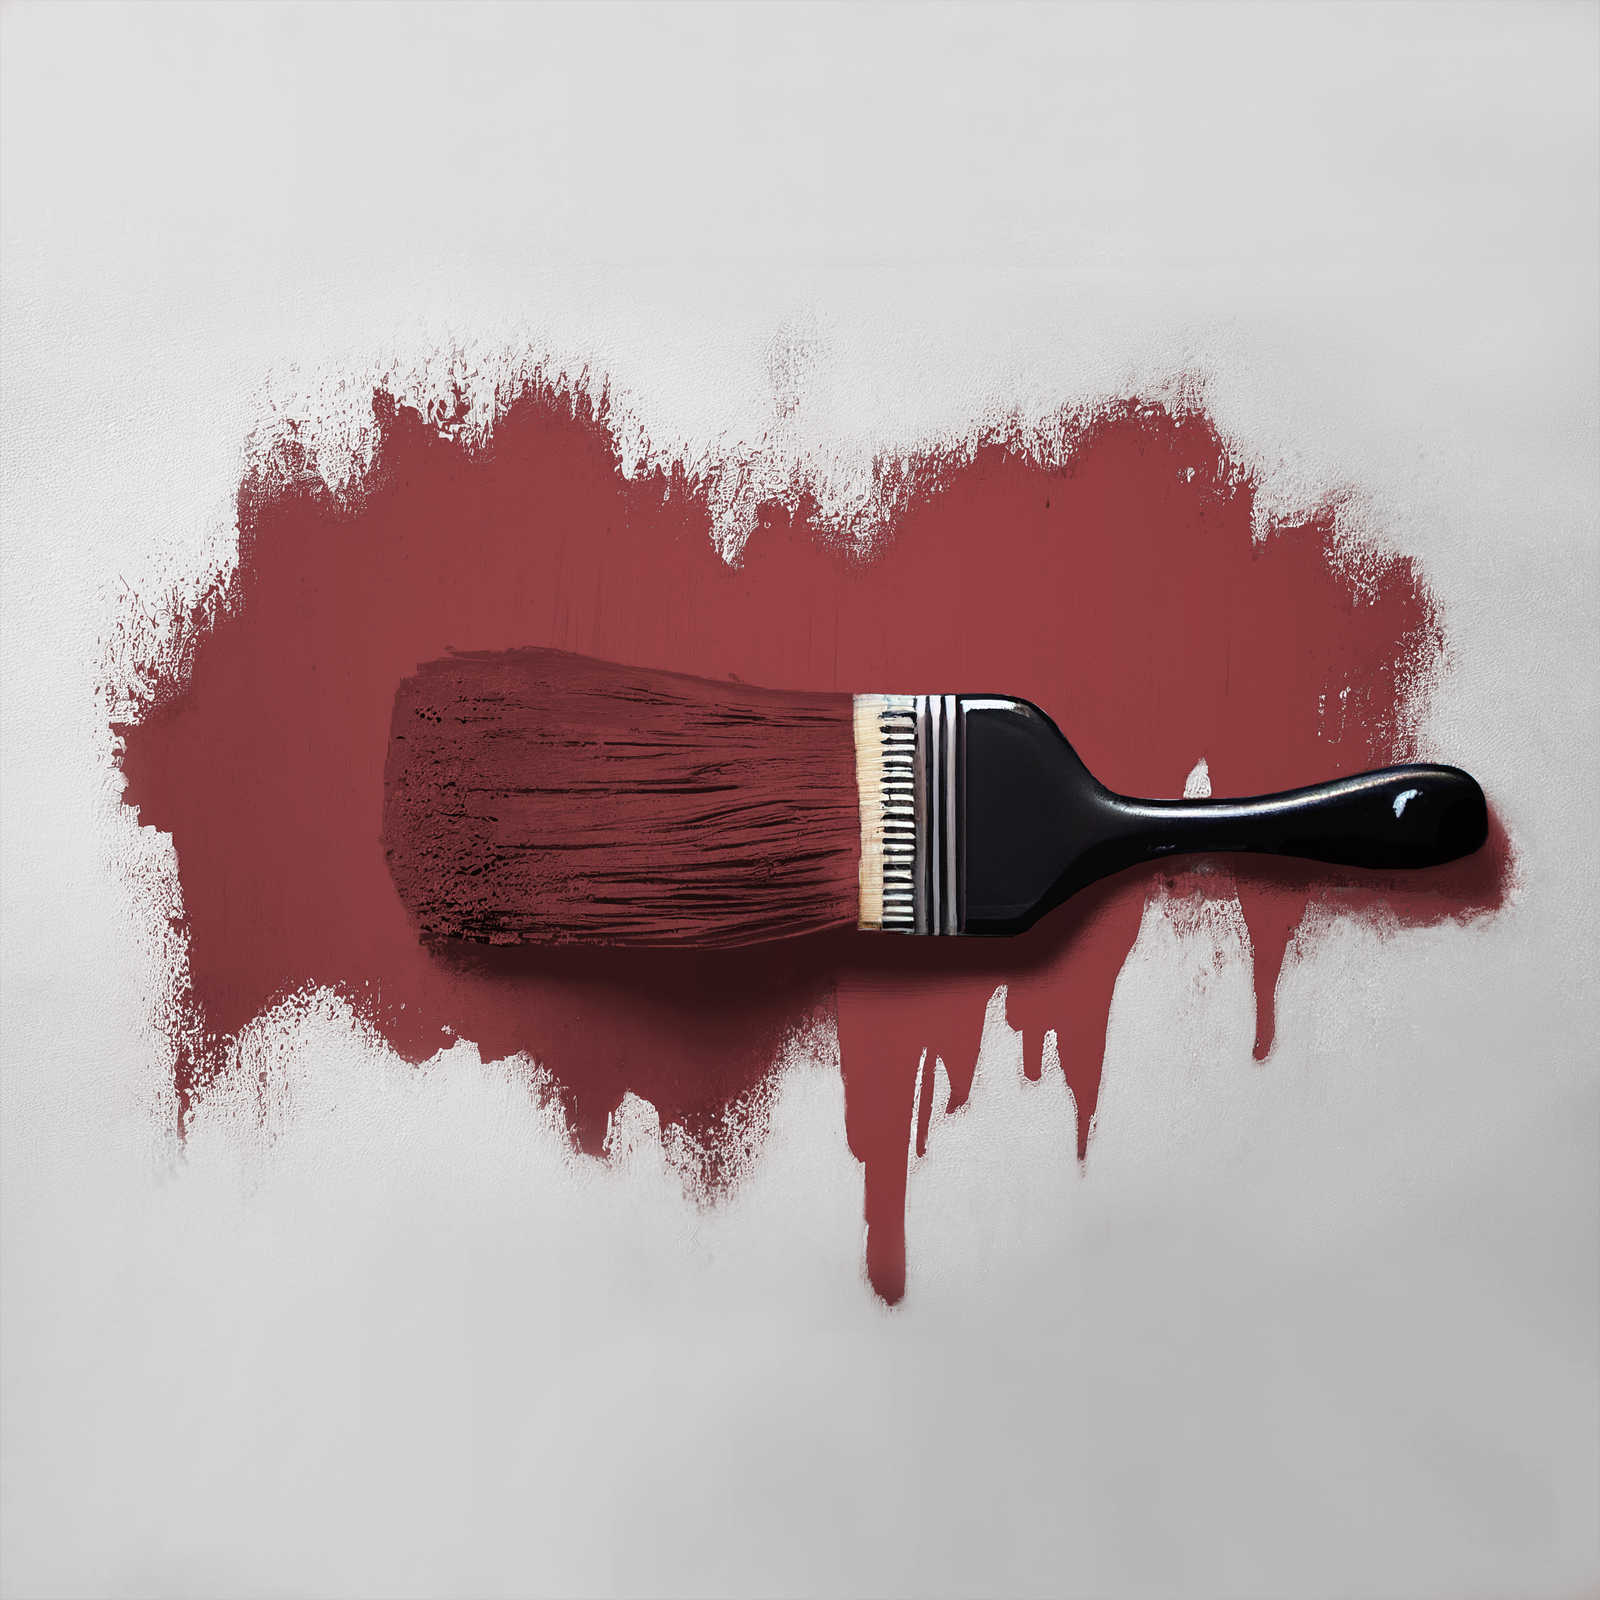             Pittura murale TCK7006 »Perky Pomegranate« in rosso scuro appassionato – 2,5 litri
        